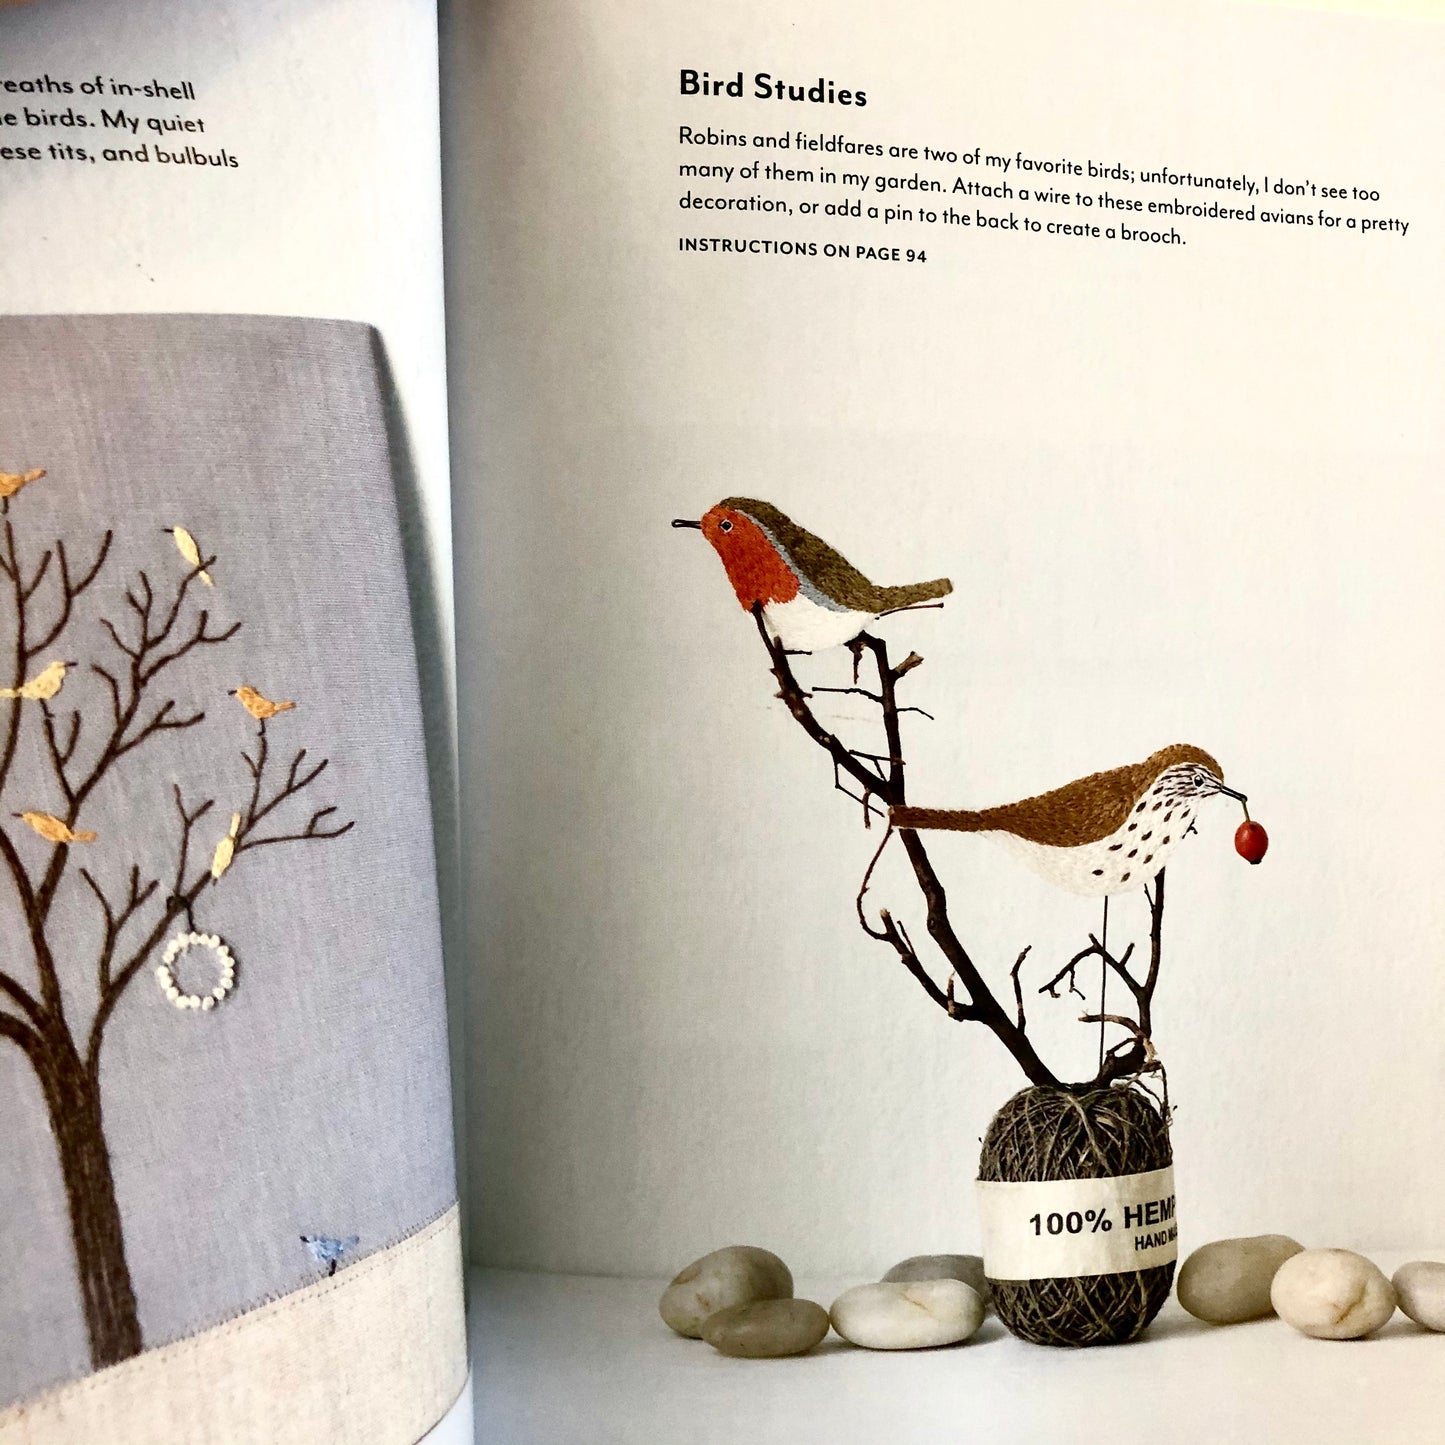 Garden Stitch Life: Embroidery Motifs & Projects to Grow Your Inspiration by Kazuko Aoki